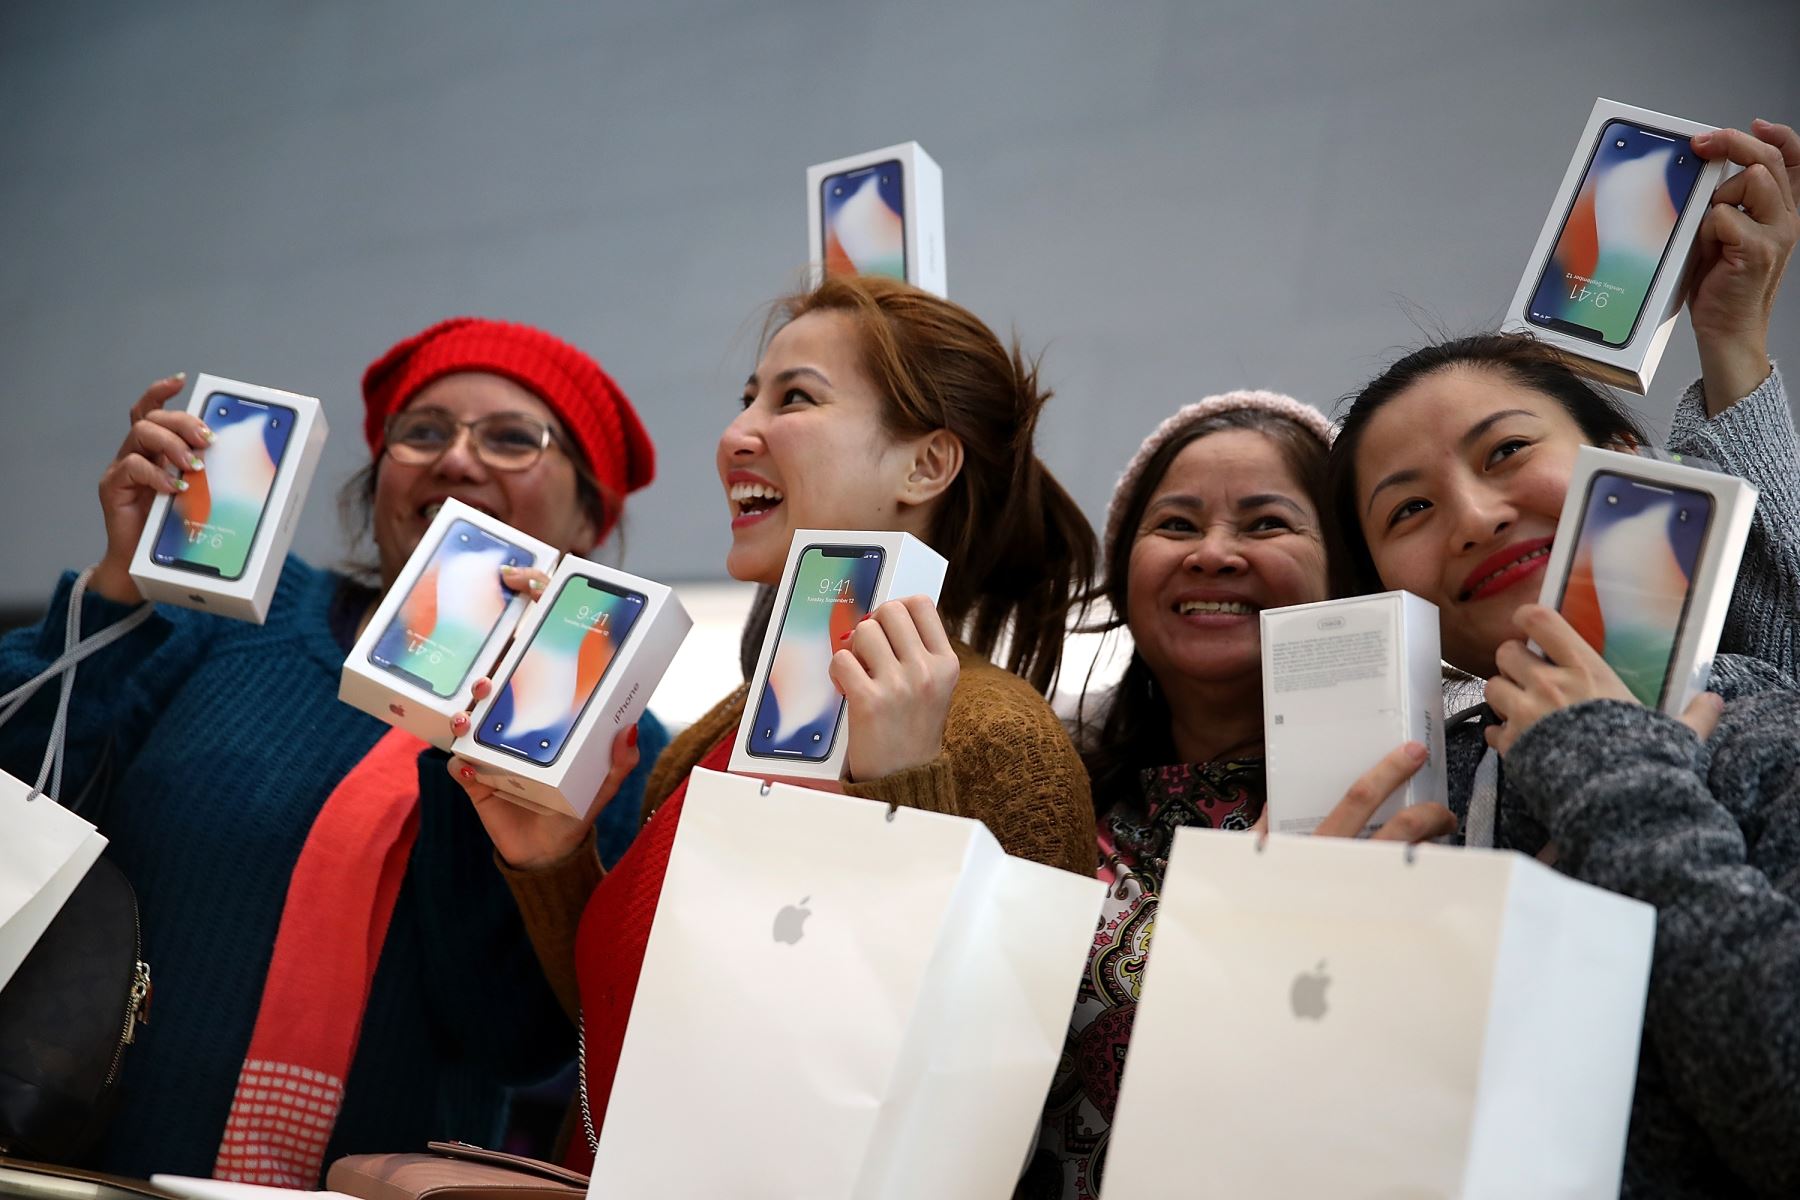 Aunque Apple se mantiene en el segundo lugar, su potencial de crecimiento es limitado porque no ha podido diversificarse y crecer en otras áreas que no sean la venta de sus iPhones, productos responsables de dos tercios de sus ingresos. Además, las ventas del iPhone X no fueron las esperadas. Foto: AFP